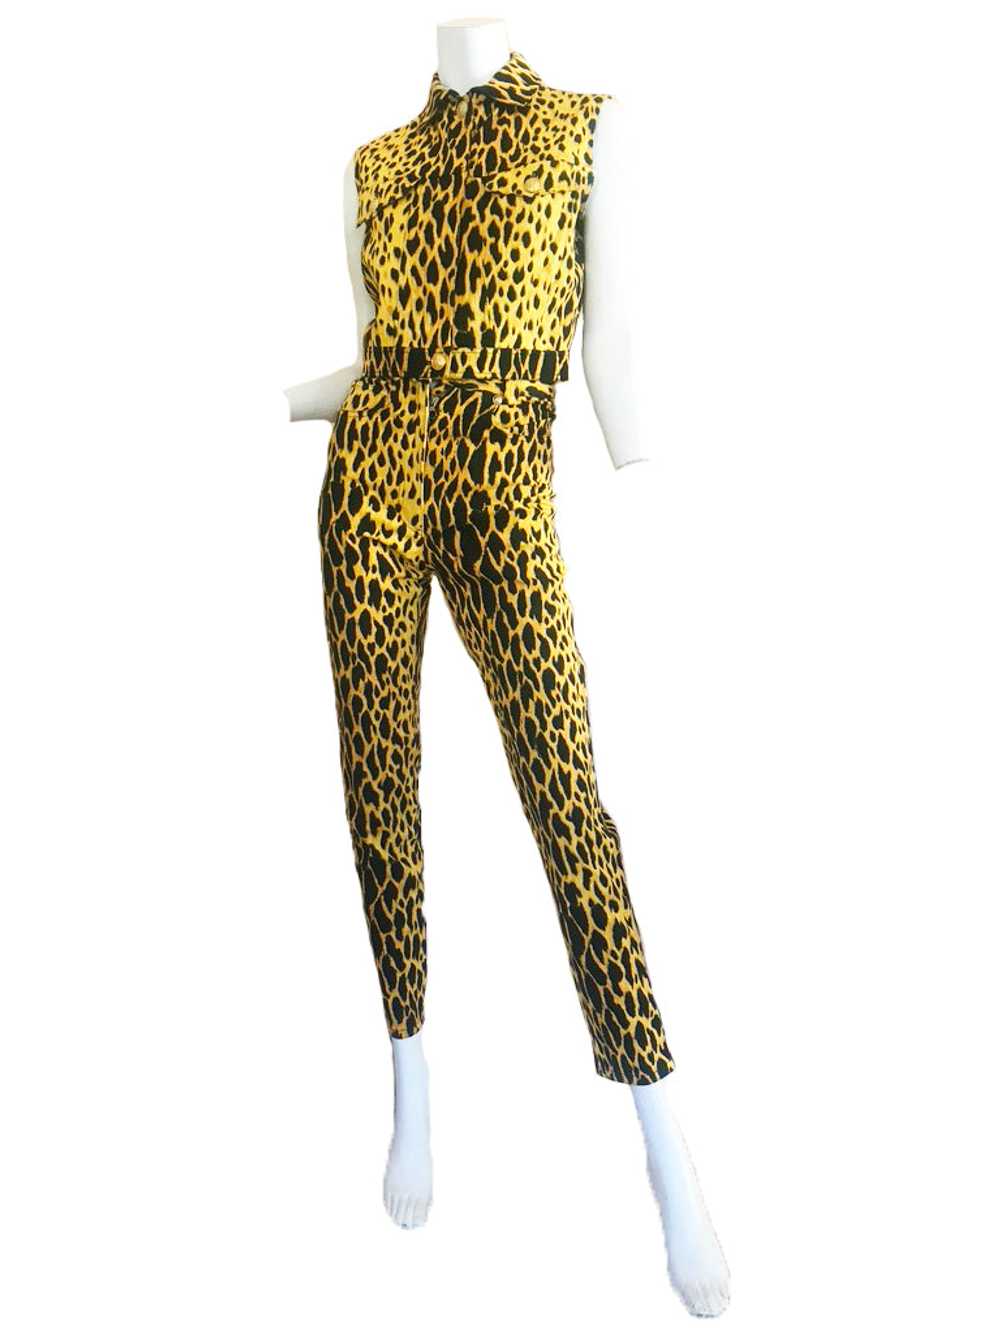 1992 GIANNI VERSACE leopard vest & jeans - image 1